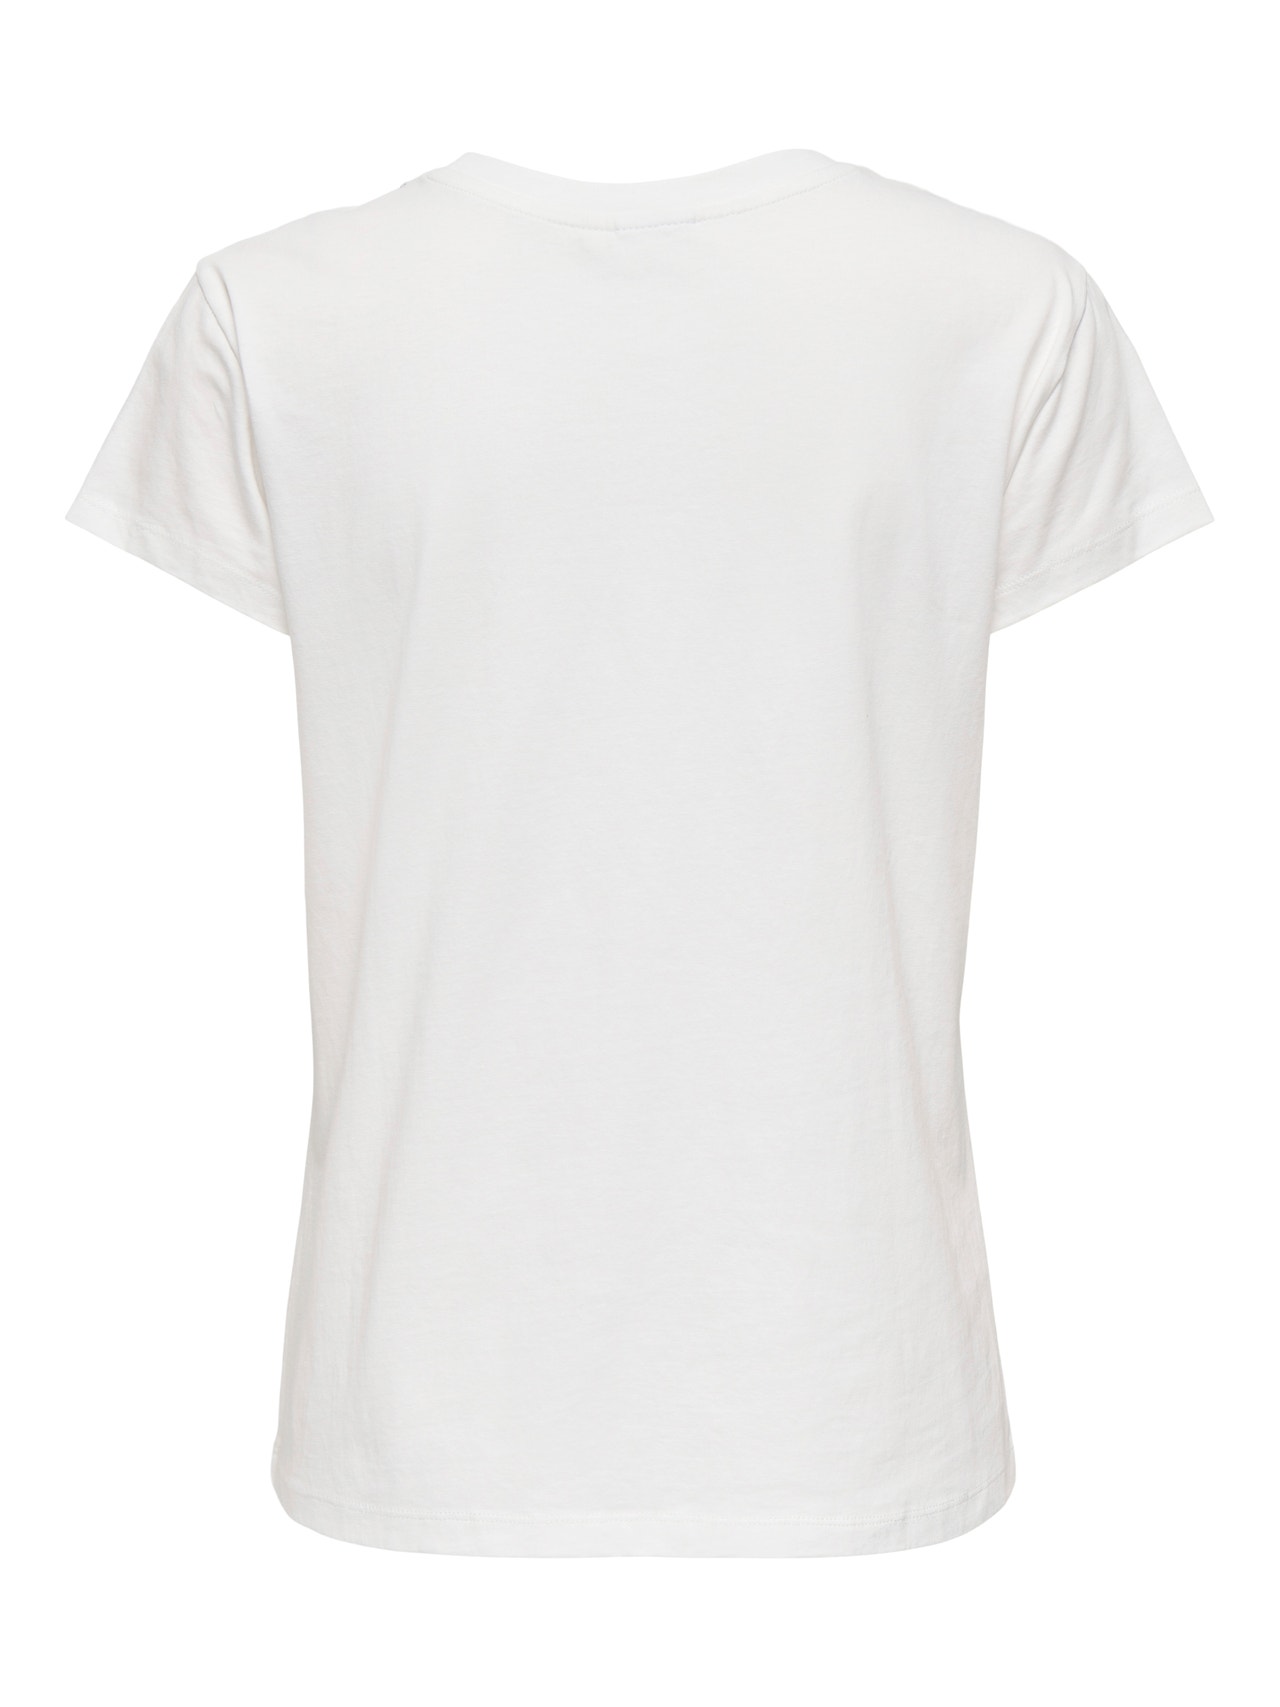 ONLY O-neck embellished t-shirt -Cloud Dancer - 15337720